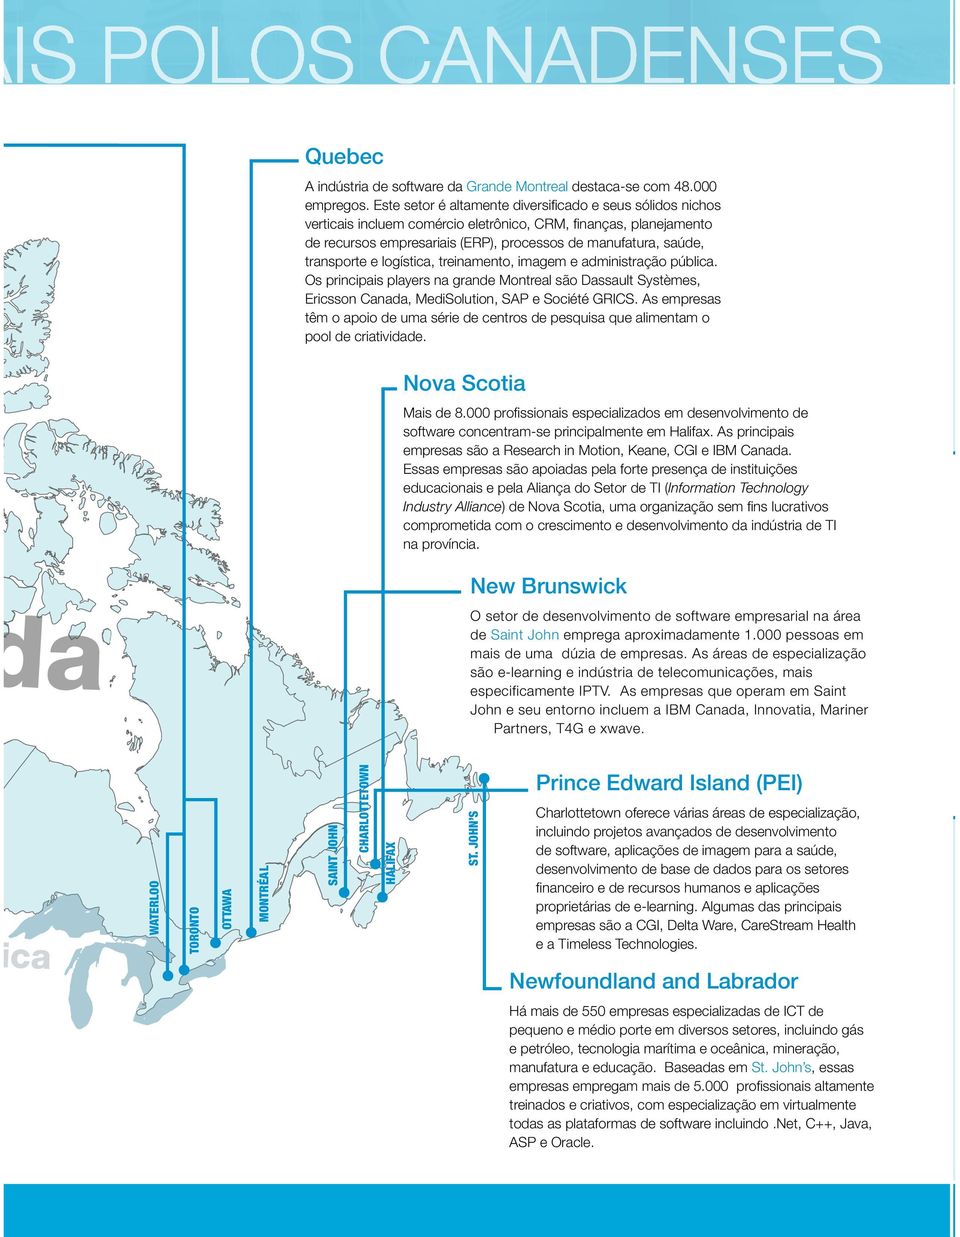 transporte e logística, treinamento, imagem e administração pública. Os principais players na grande Montreal são Dassault Systèmes, Ericsson Canada, MediSolution, SAP e Société GRICS.